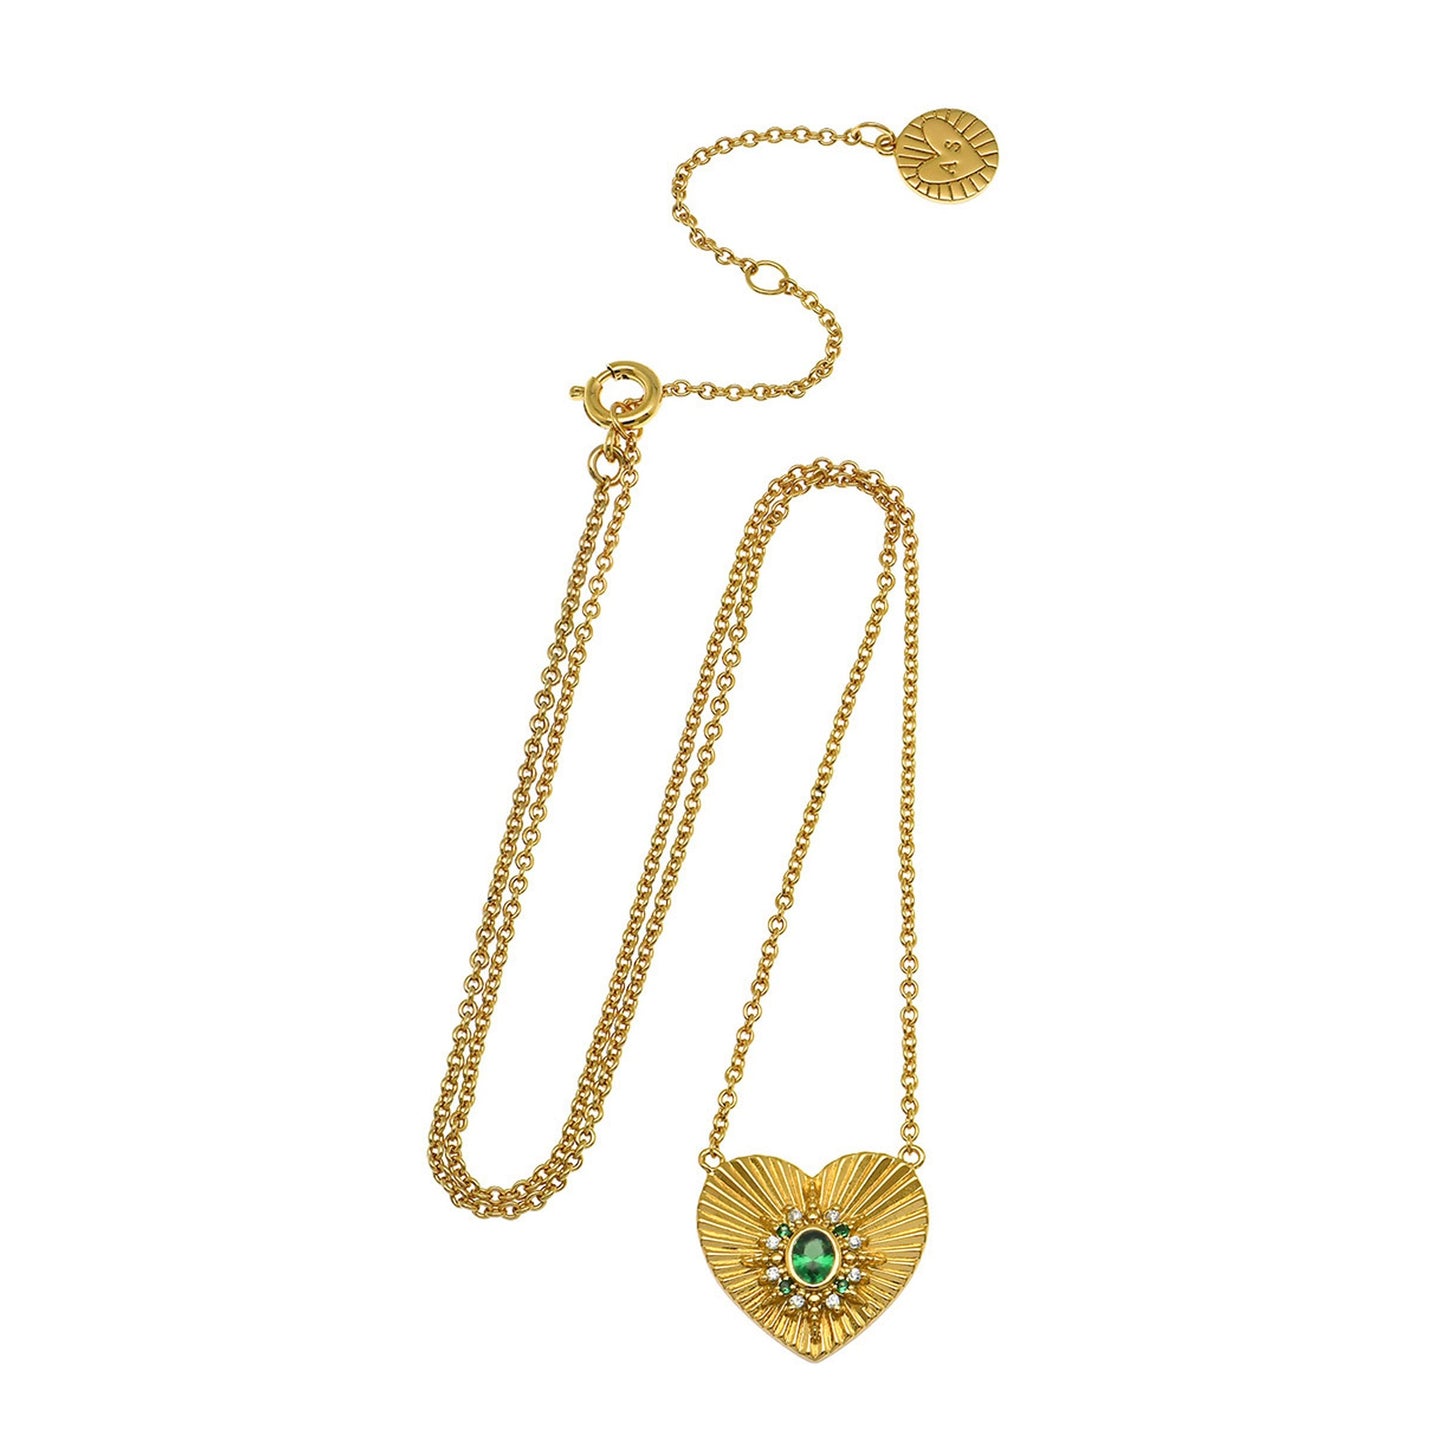 Luna Heart Necklace Emerald Green & Gold